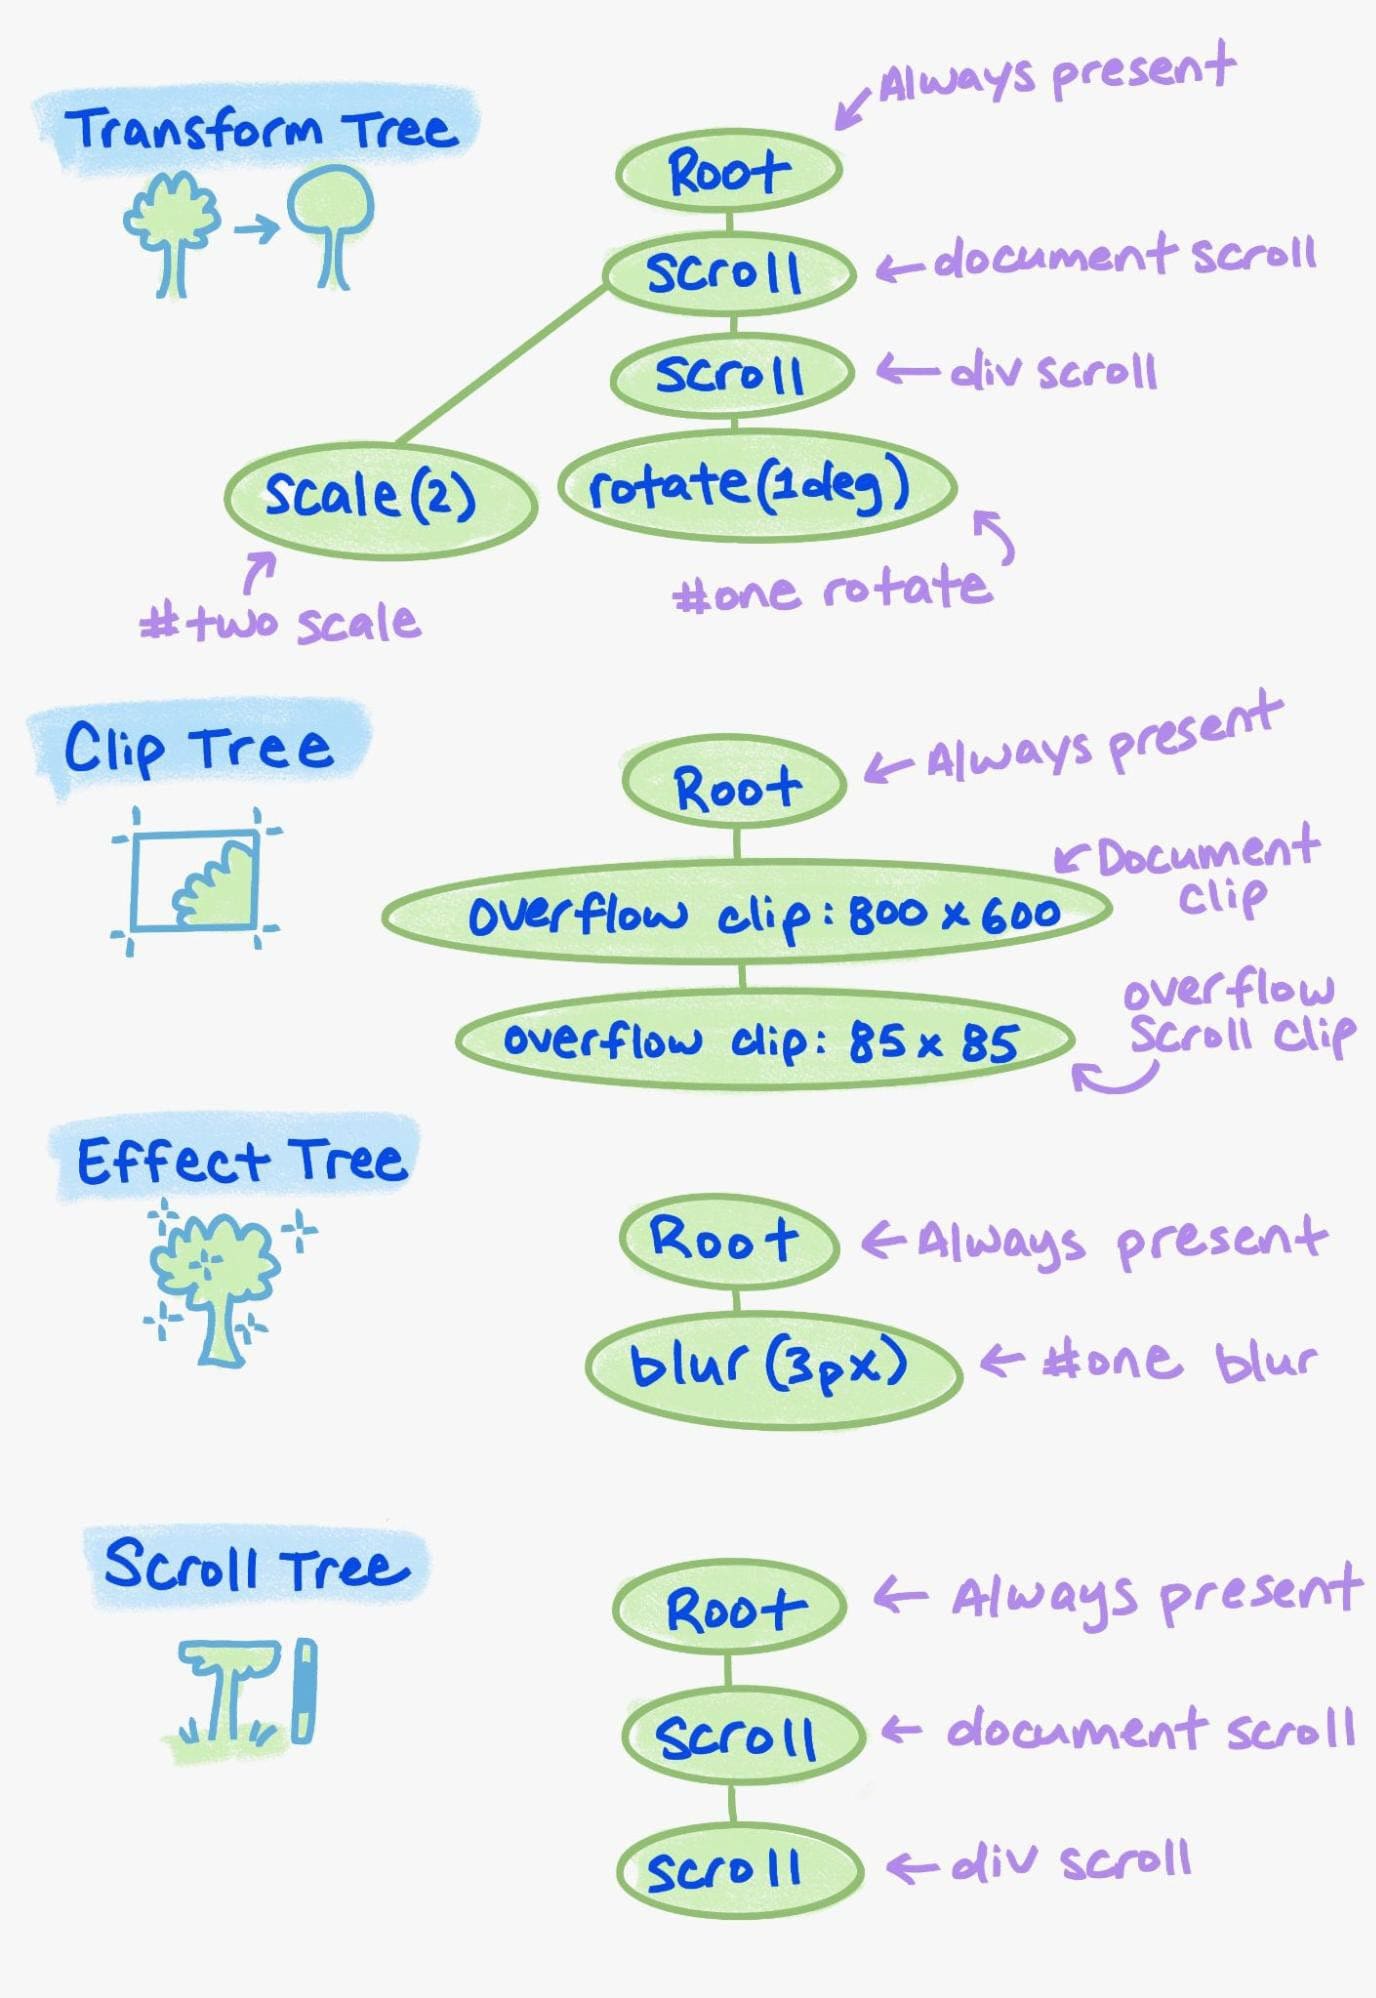 Пример различных элементов в дереве свойств.